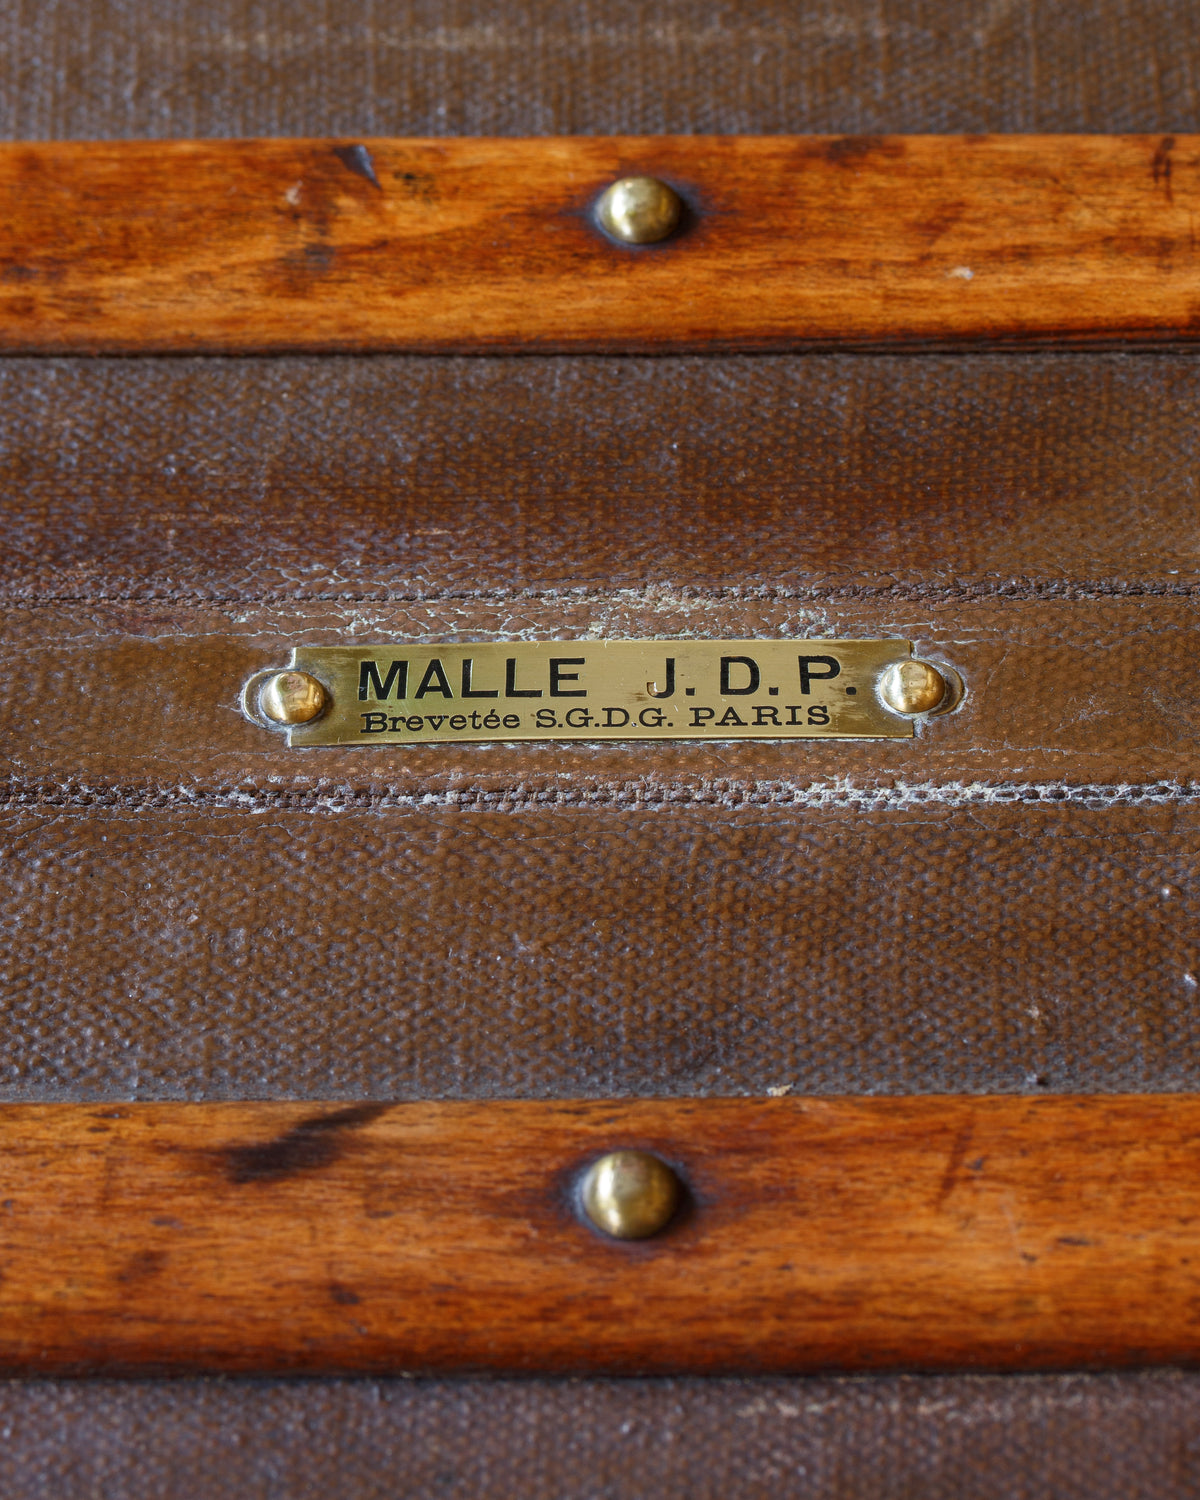 Vintage Malle J.D.P. Steamer Trunk